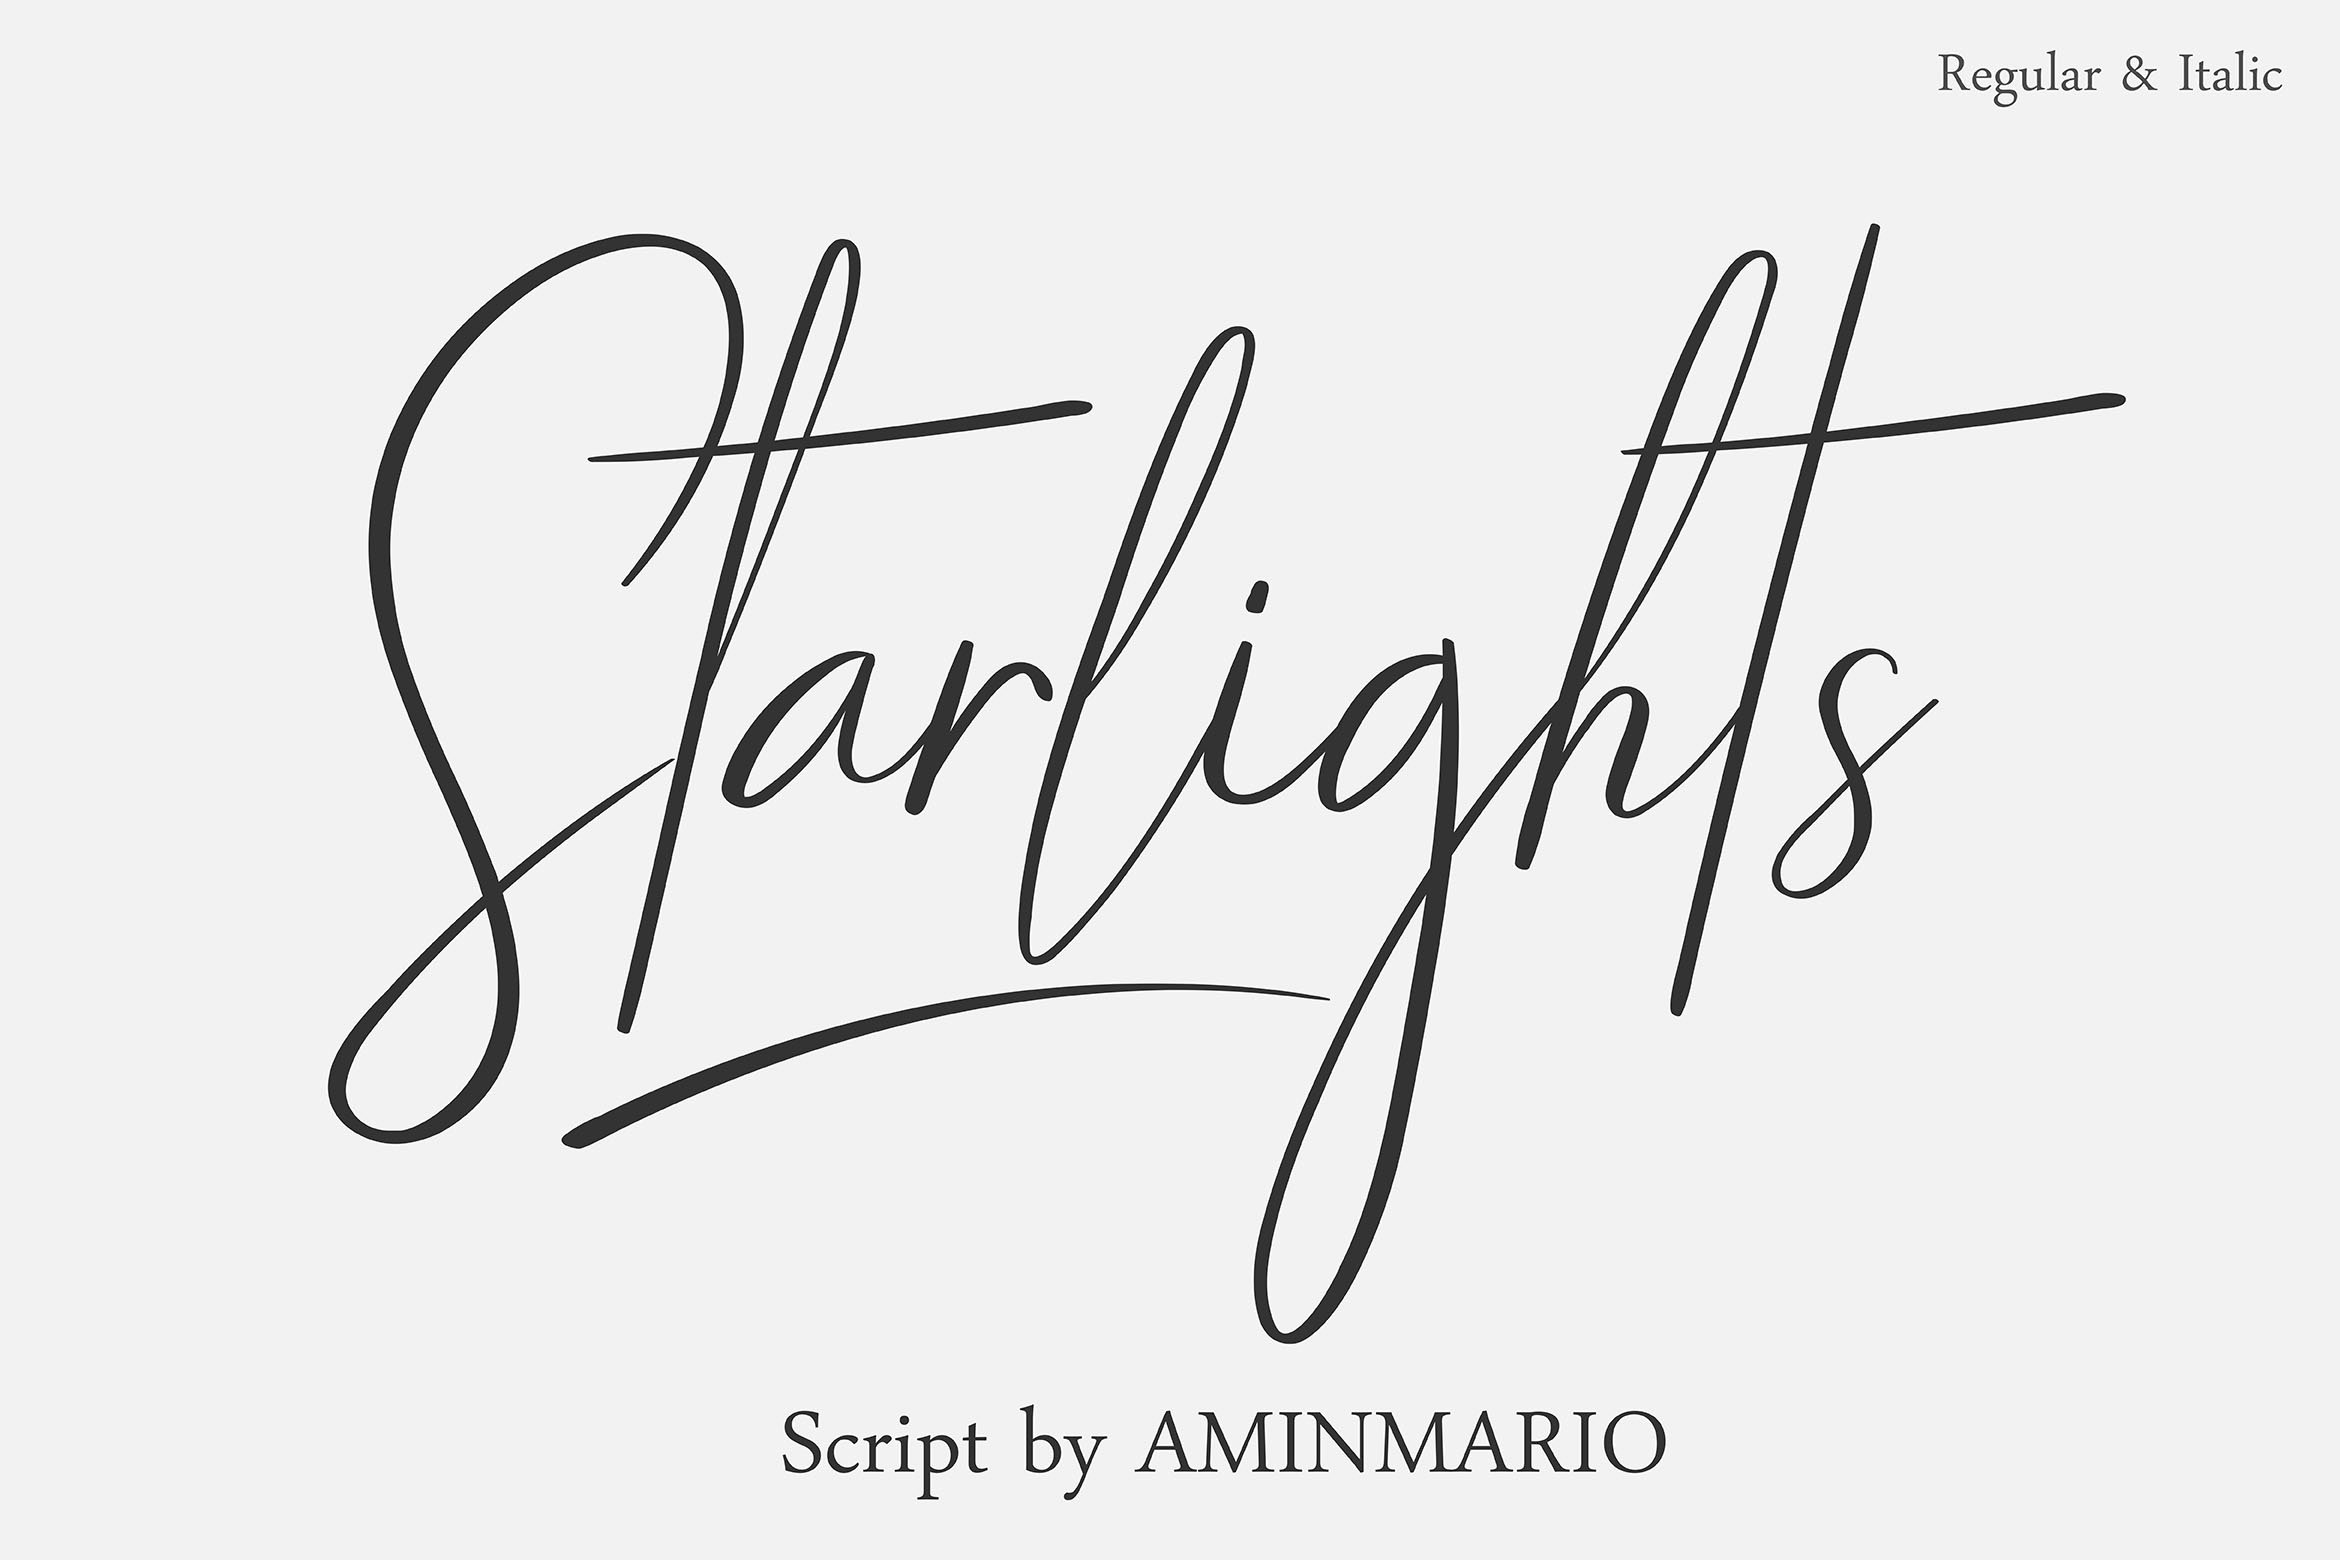 新颖时尚的手写体英文字体 STARLIGHTS | A Cl